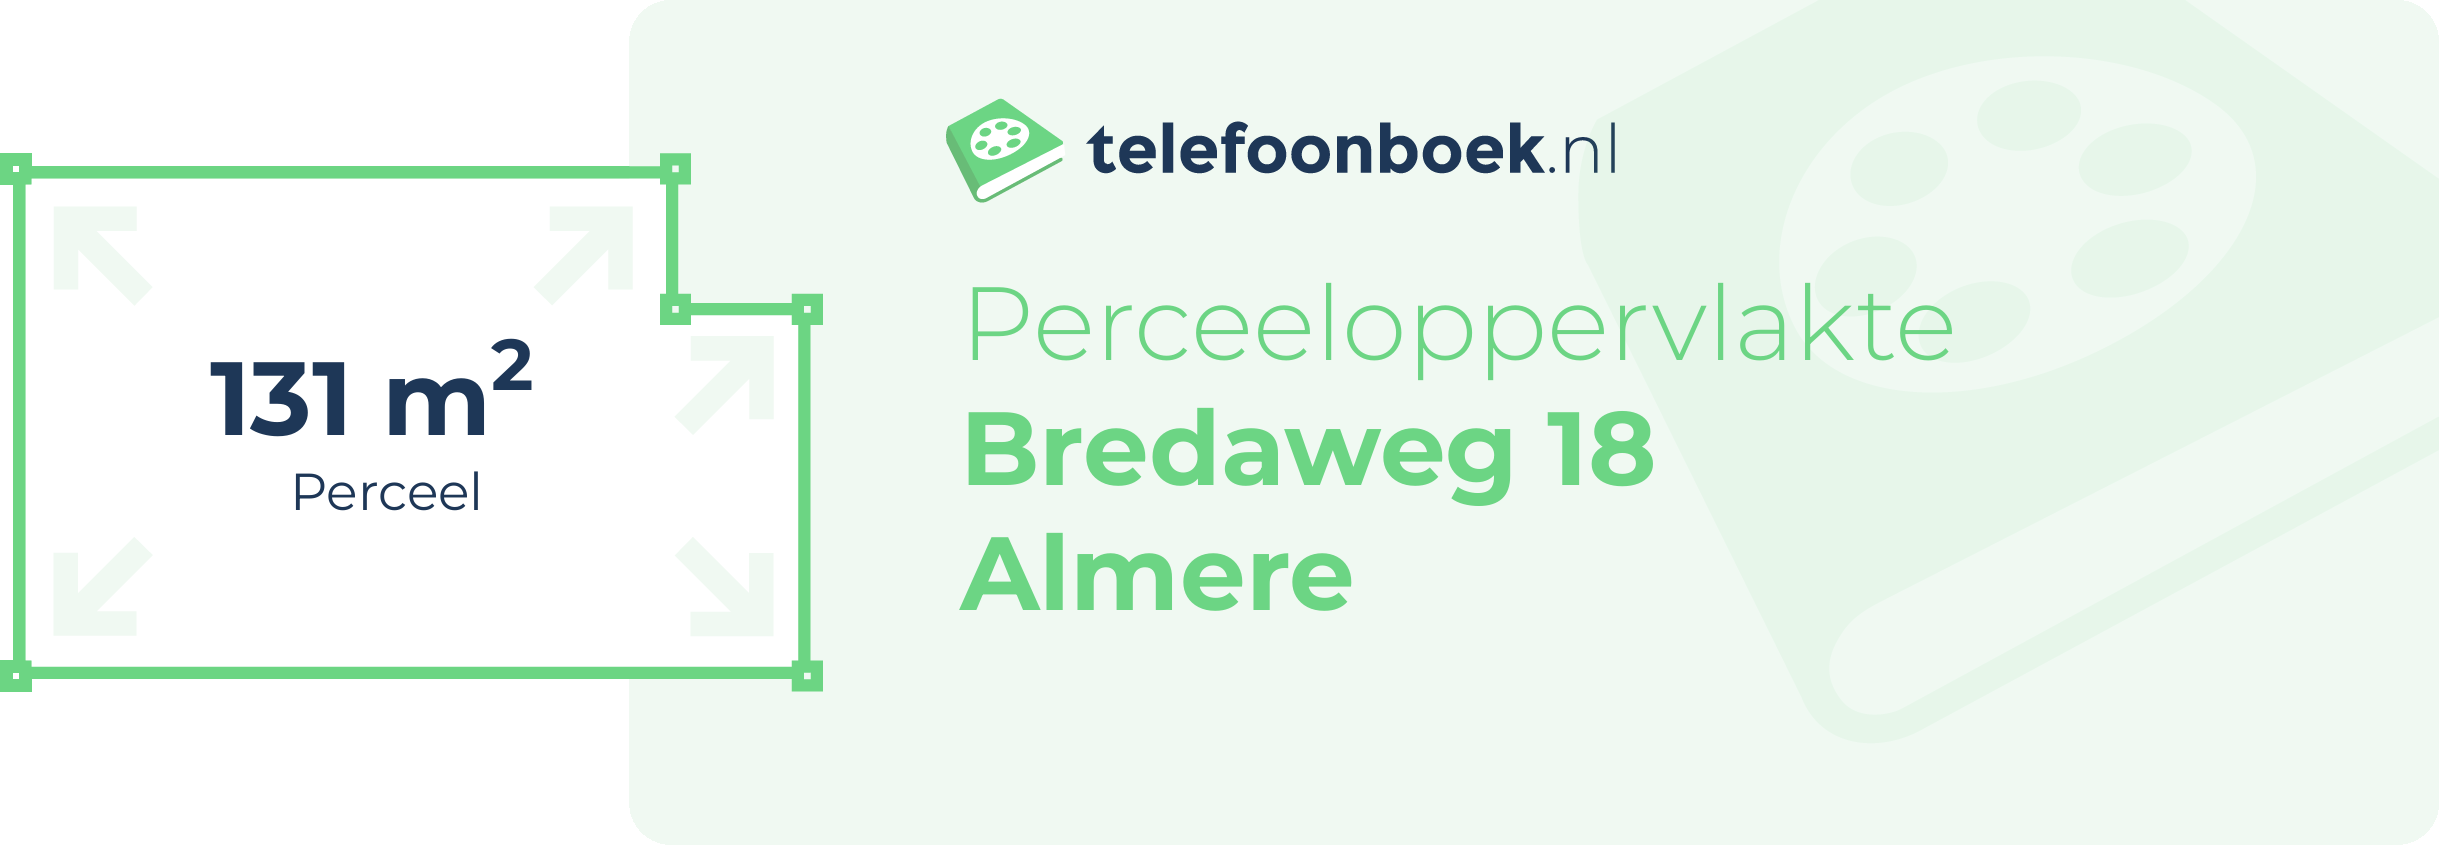 Perceeloppervlakte Bredaweg 18 Almere